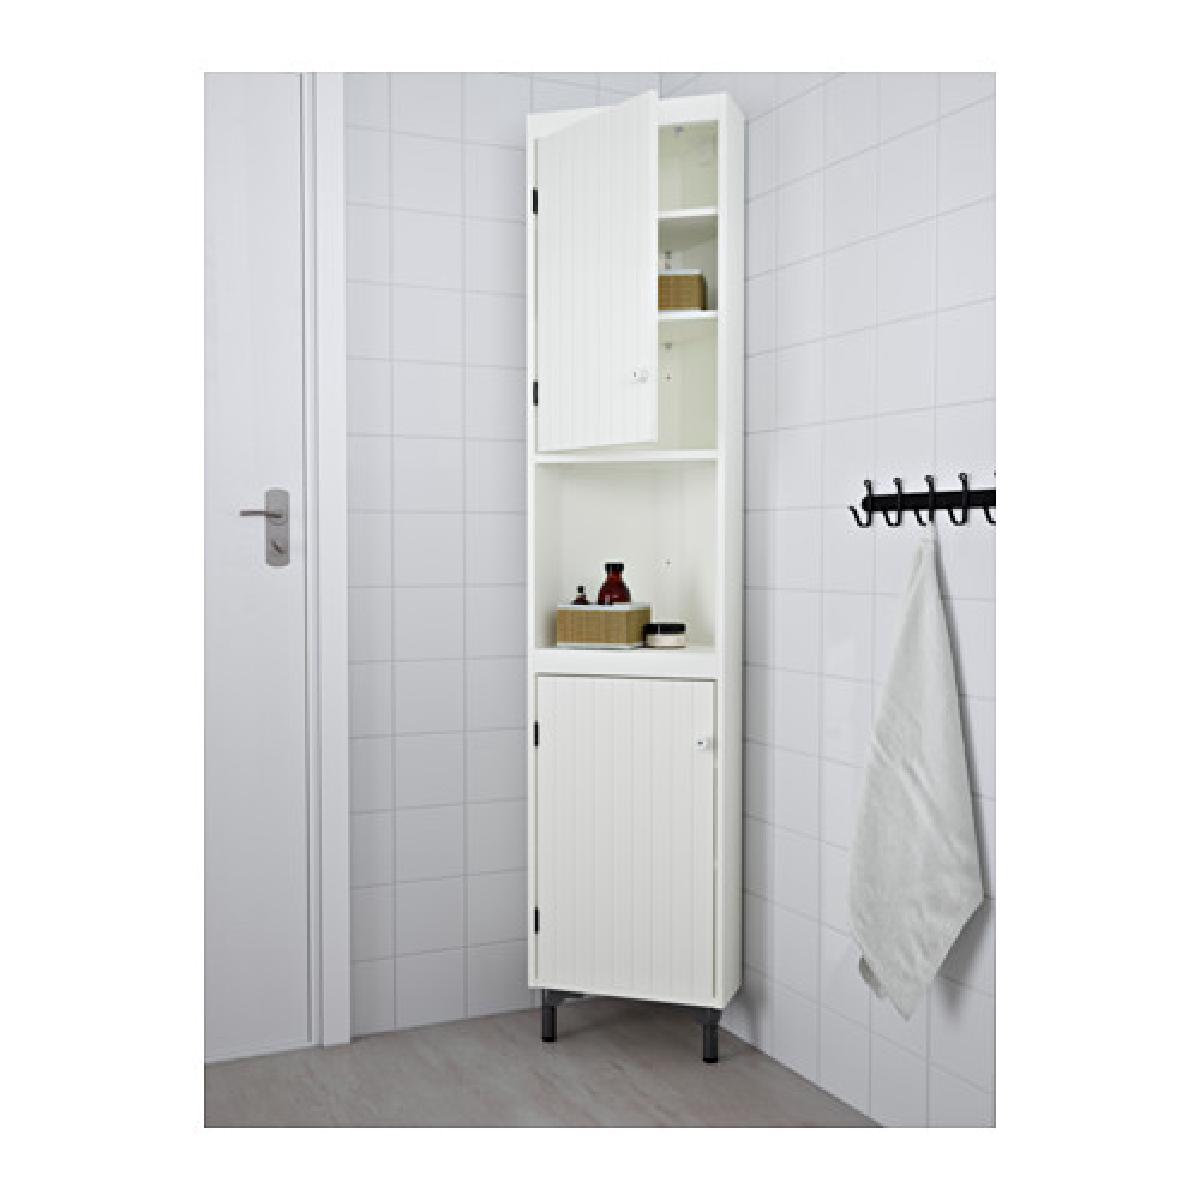 15.ตู้ชั้นวางสีขาวทรงสูงสะอาดตา ถูกใจผู้ที่ชื่นชอบสีขาว เหมาะกับห้องน้ำขนาดเล็ก และสามารถเลือกติดบานตู้ให้เปิดทางซ้ายหรือขวาก็ได้